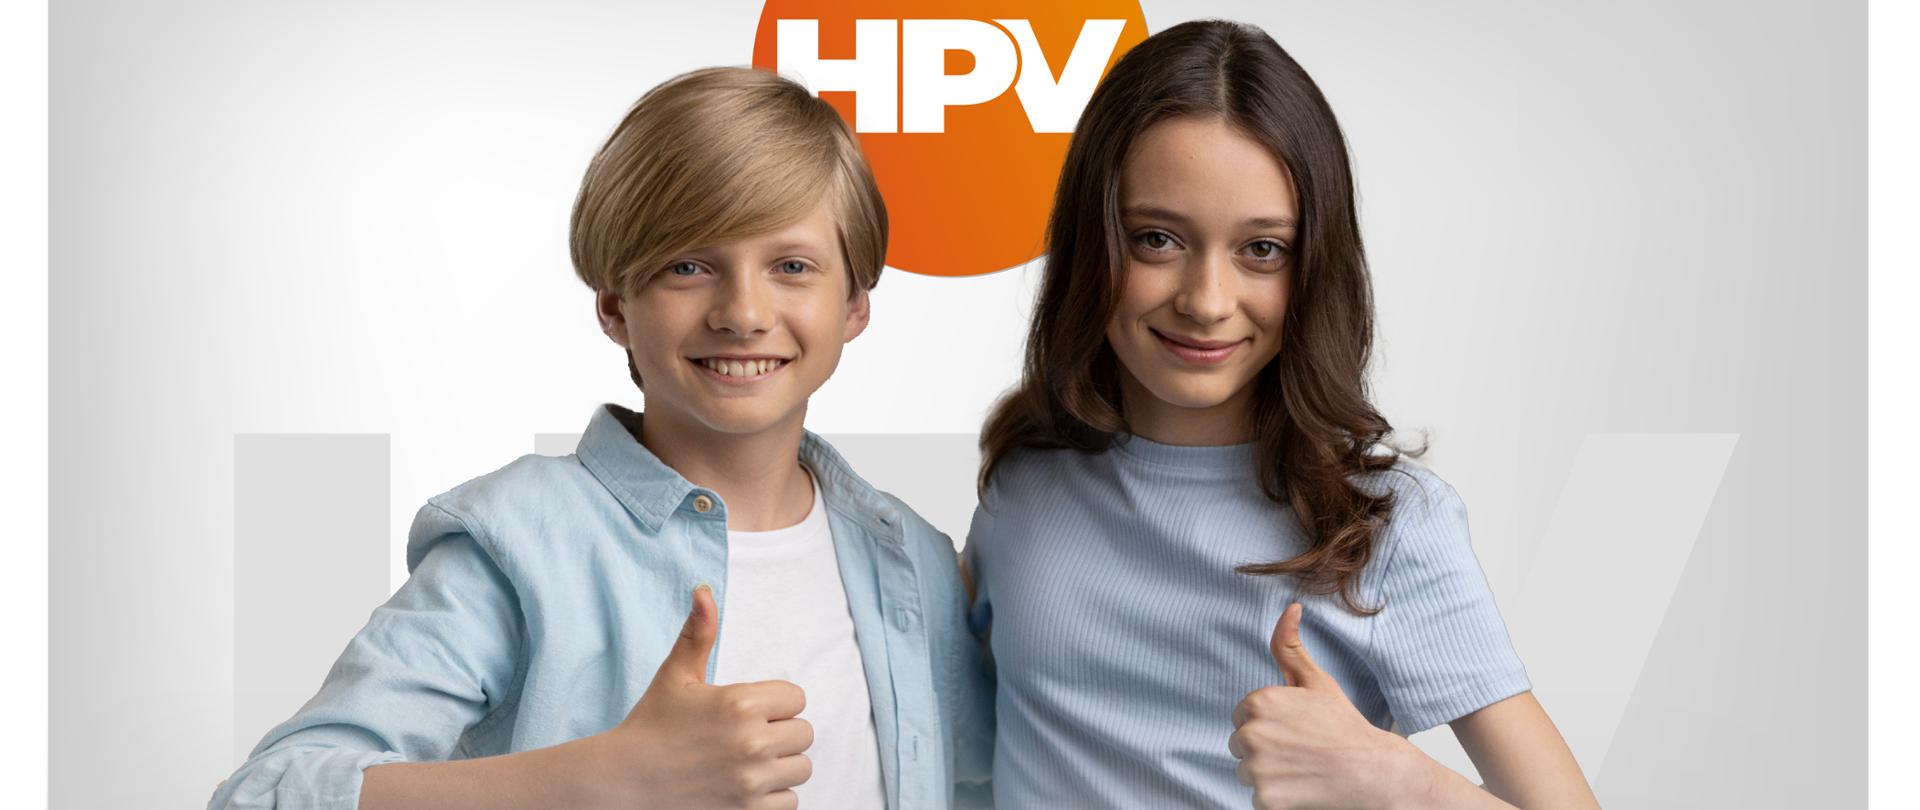 HPV - szczepienie jest bezpłatne